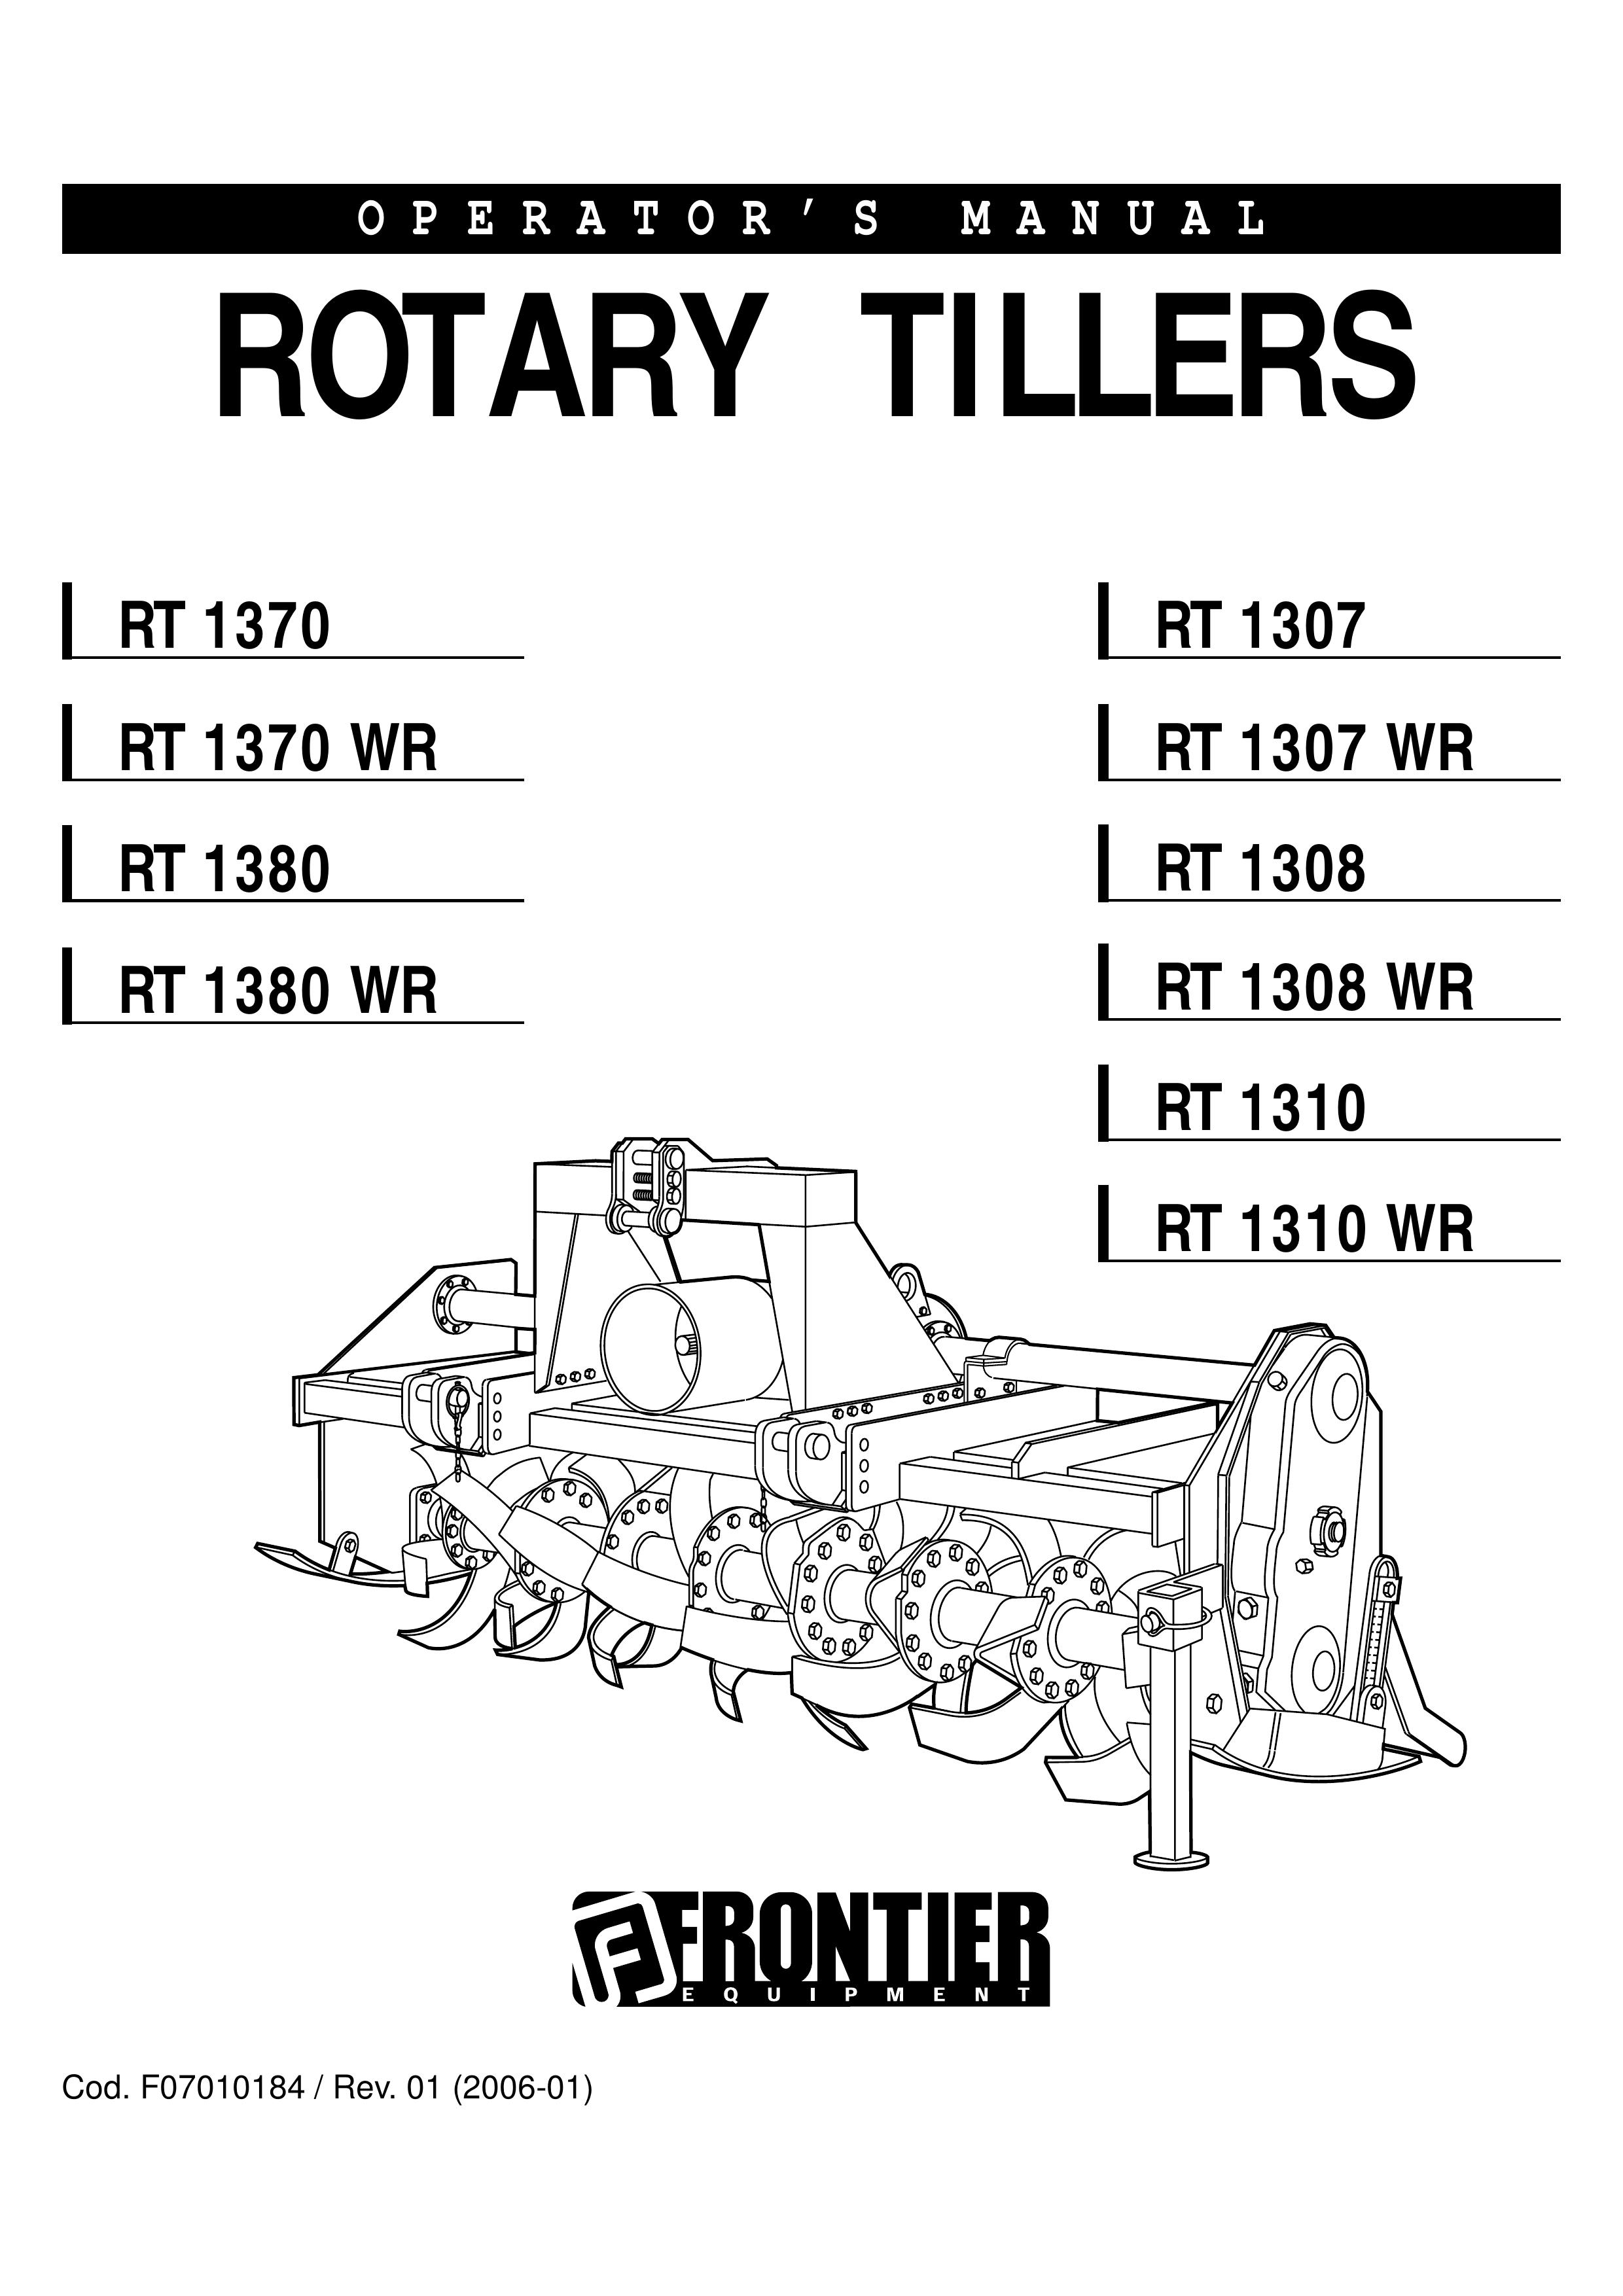 John Deere RT 1370 Tiller User Manual